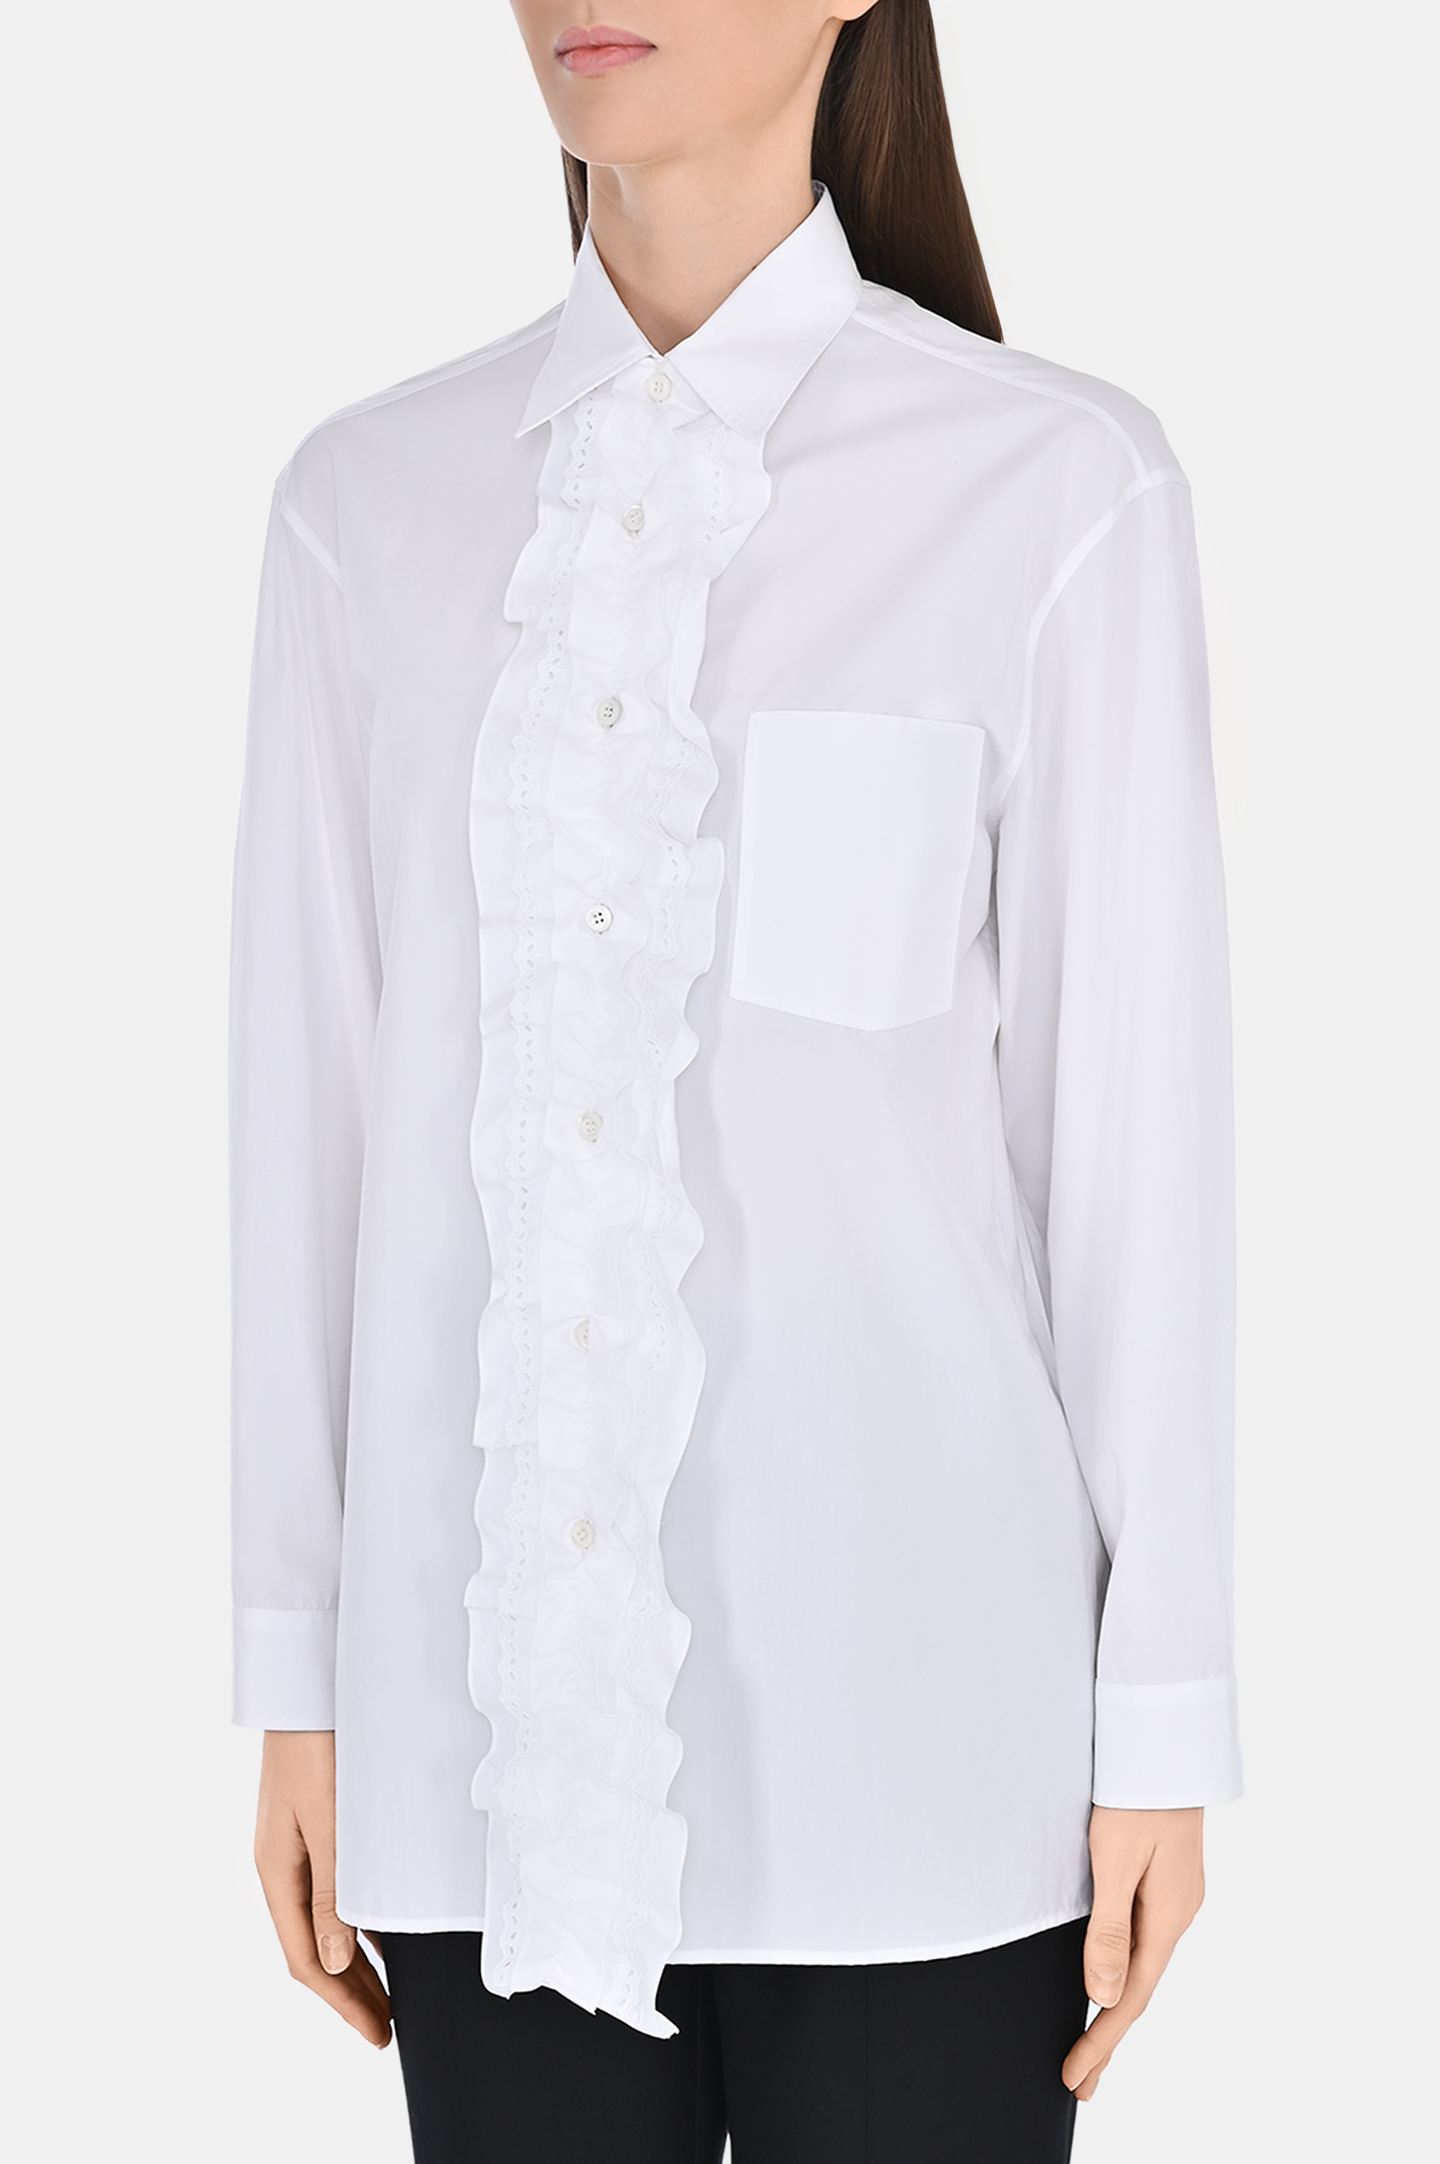 Блуза PRADA P407G S, цвет: Белый, Женский